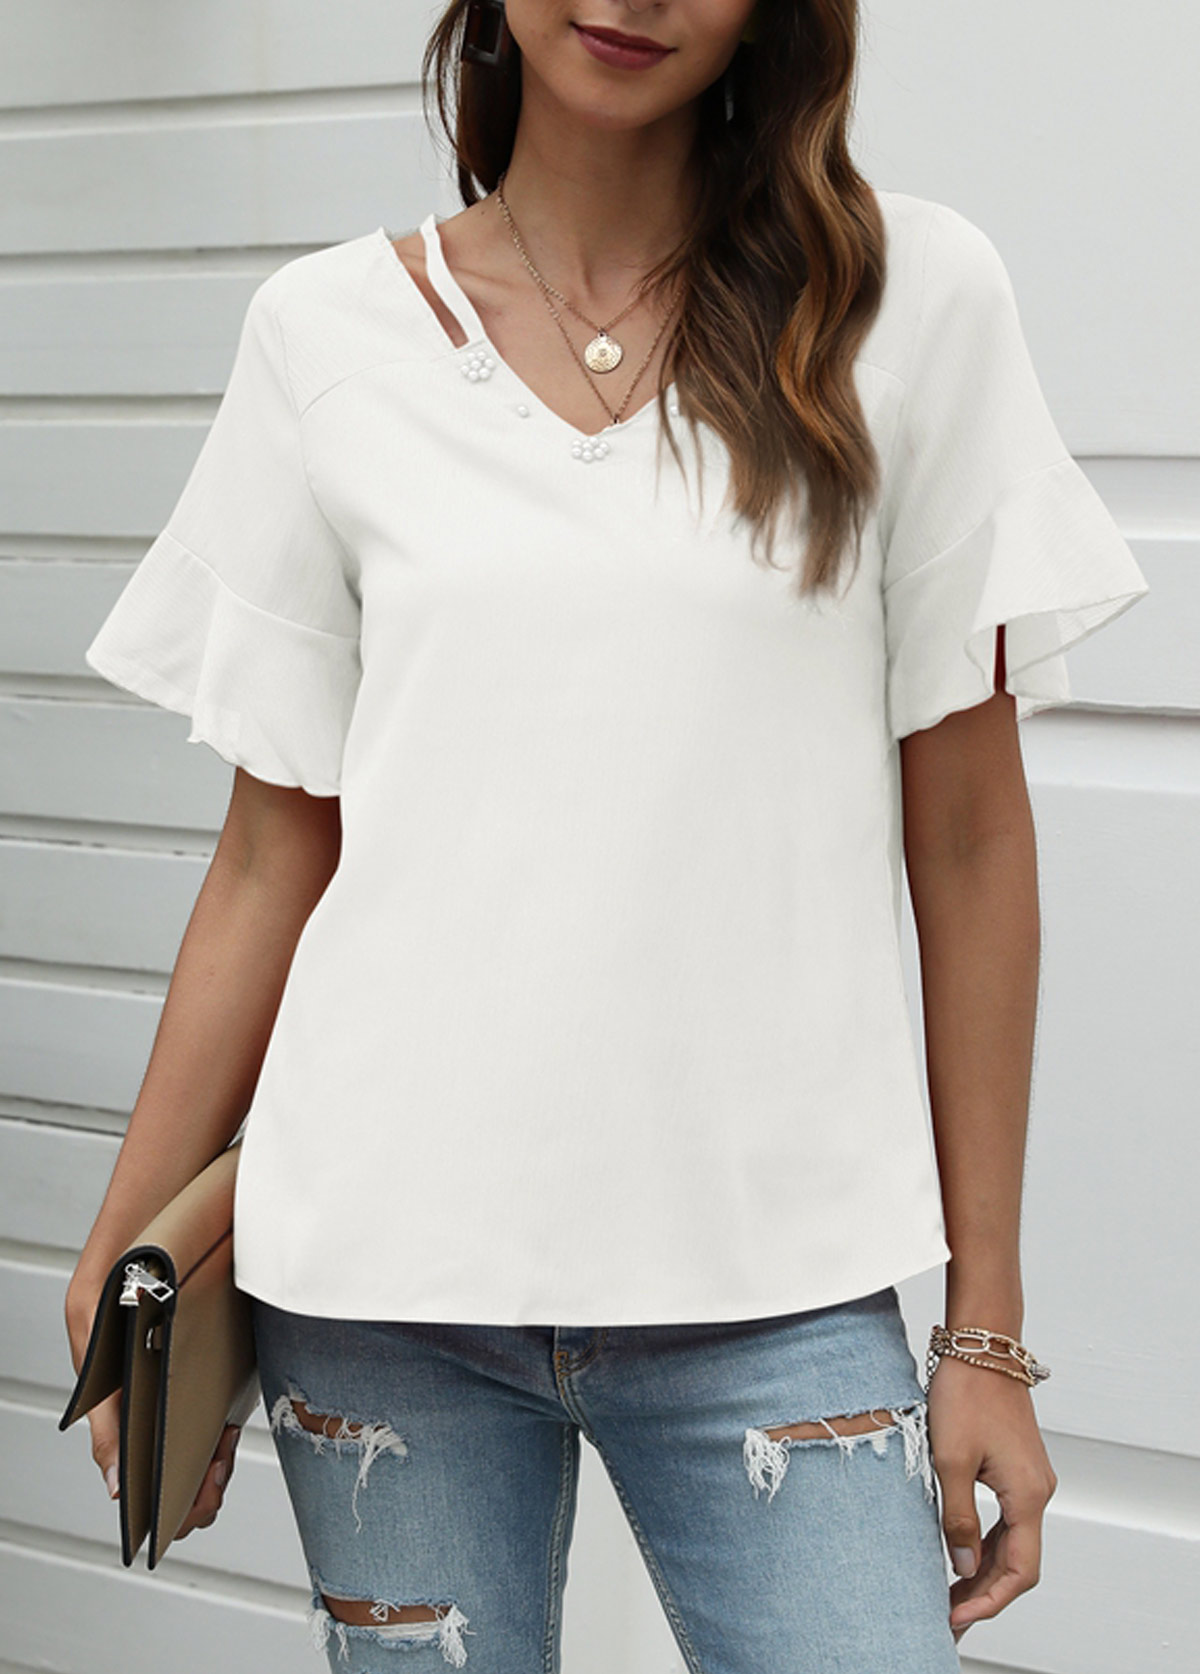 Cutout White Pearl Design T Shirt